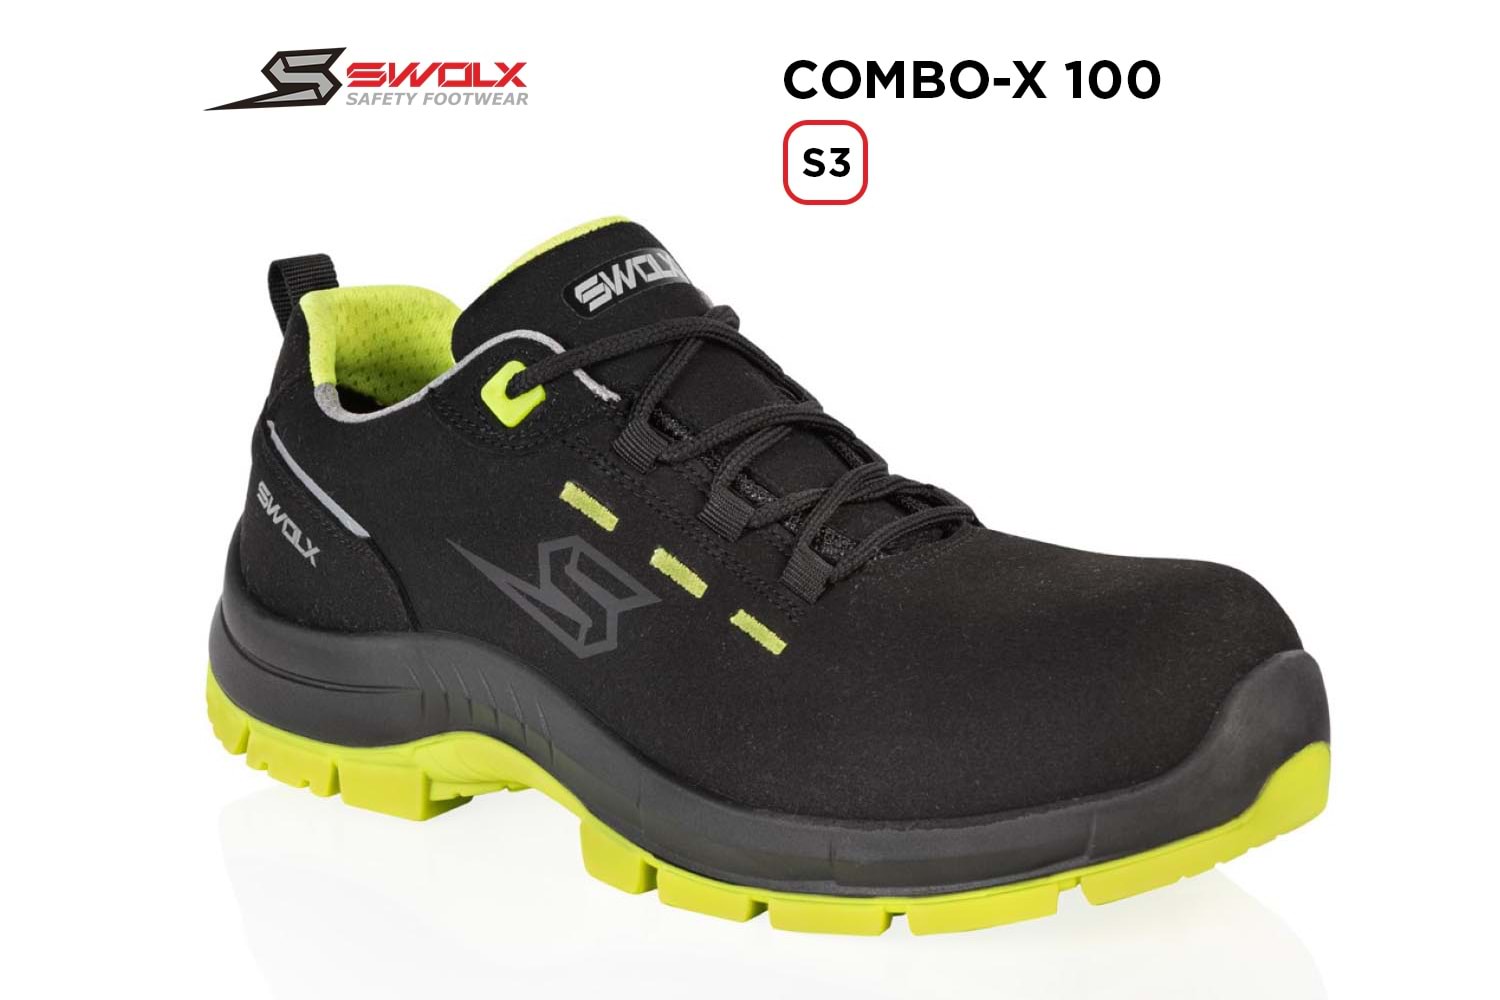 Swolx İş Ayakkabısı - Combo-X 100 S3 - 46